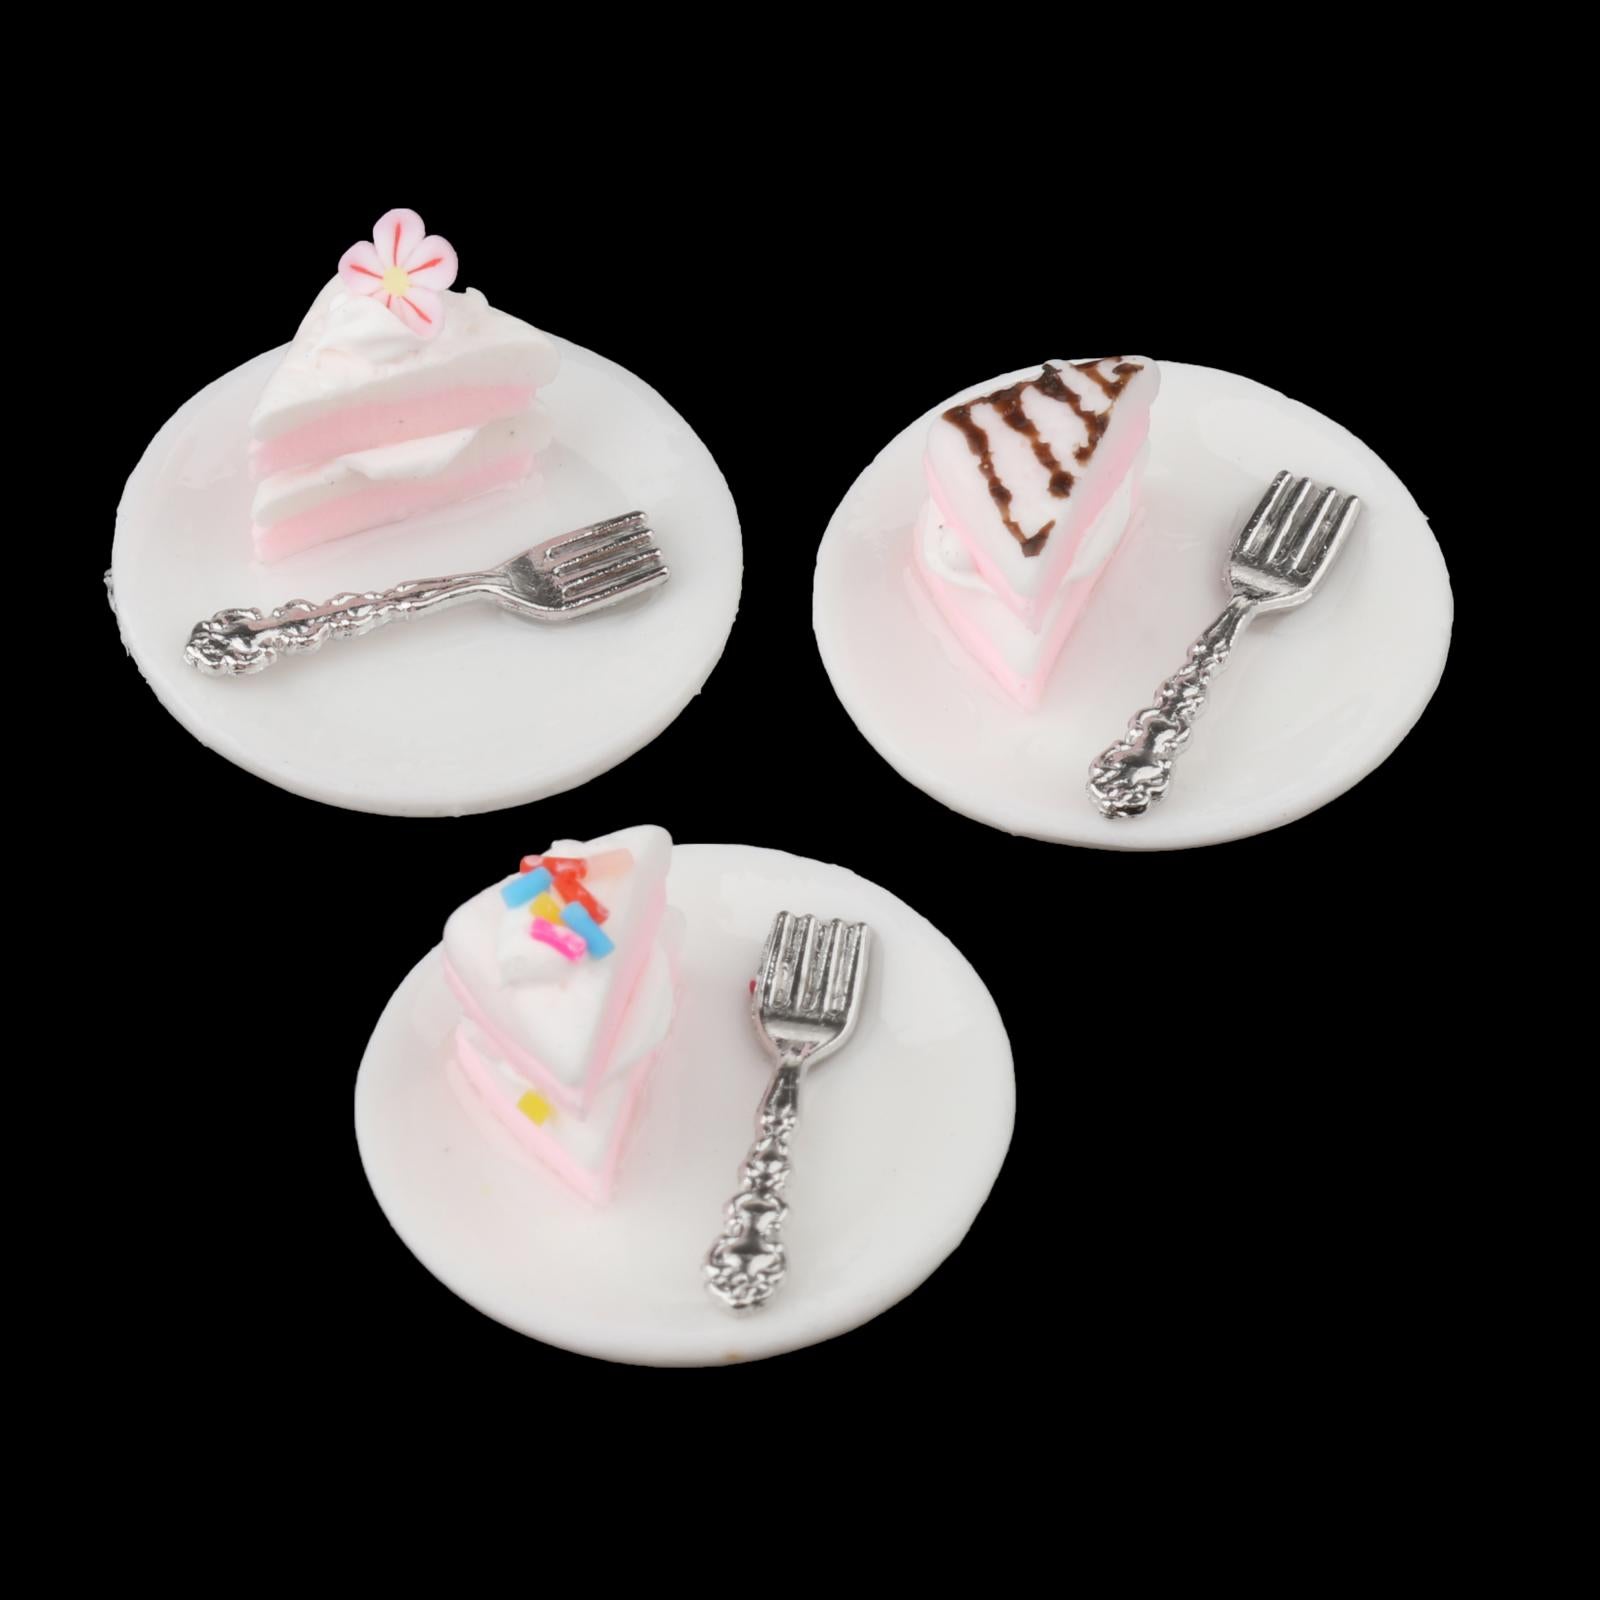 1/12 Miniatures Dollhouse Play Food Cake Dollhouse Decor Chocolate Cake